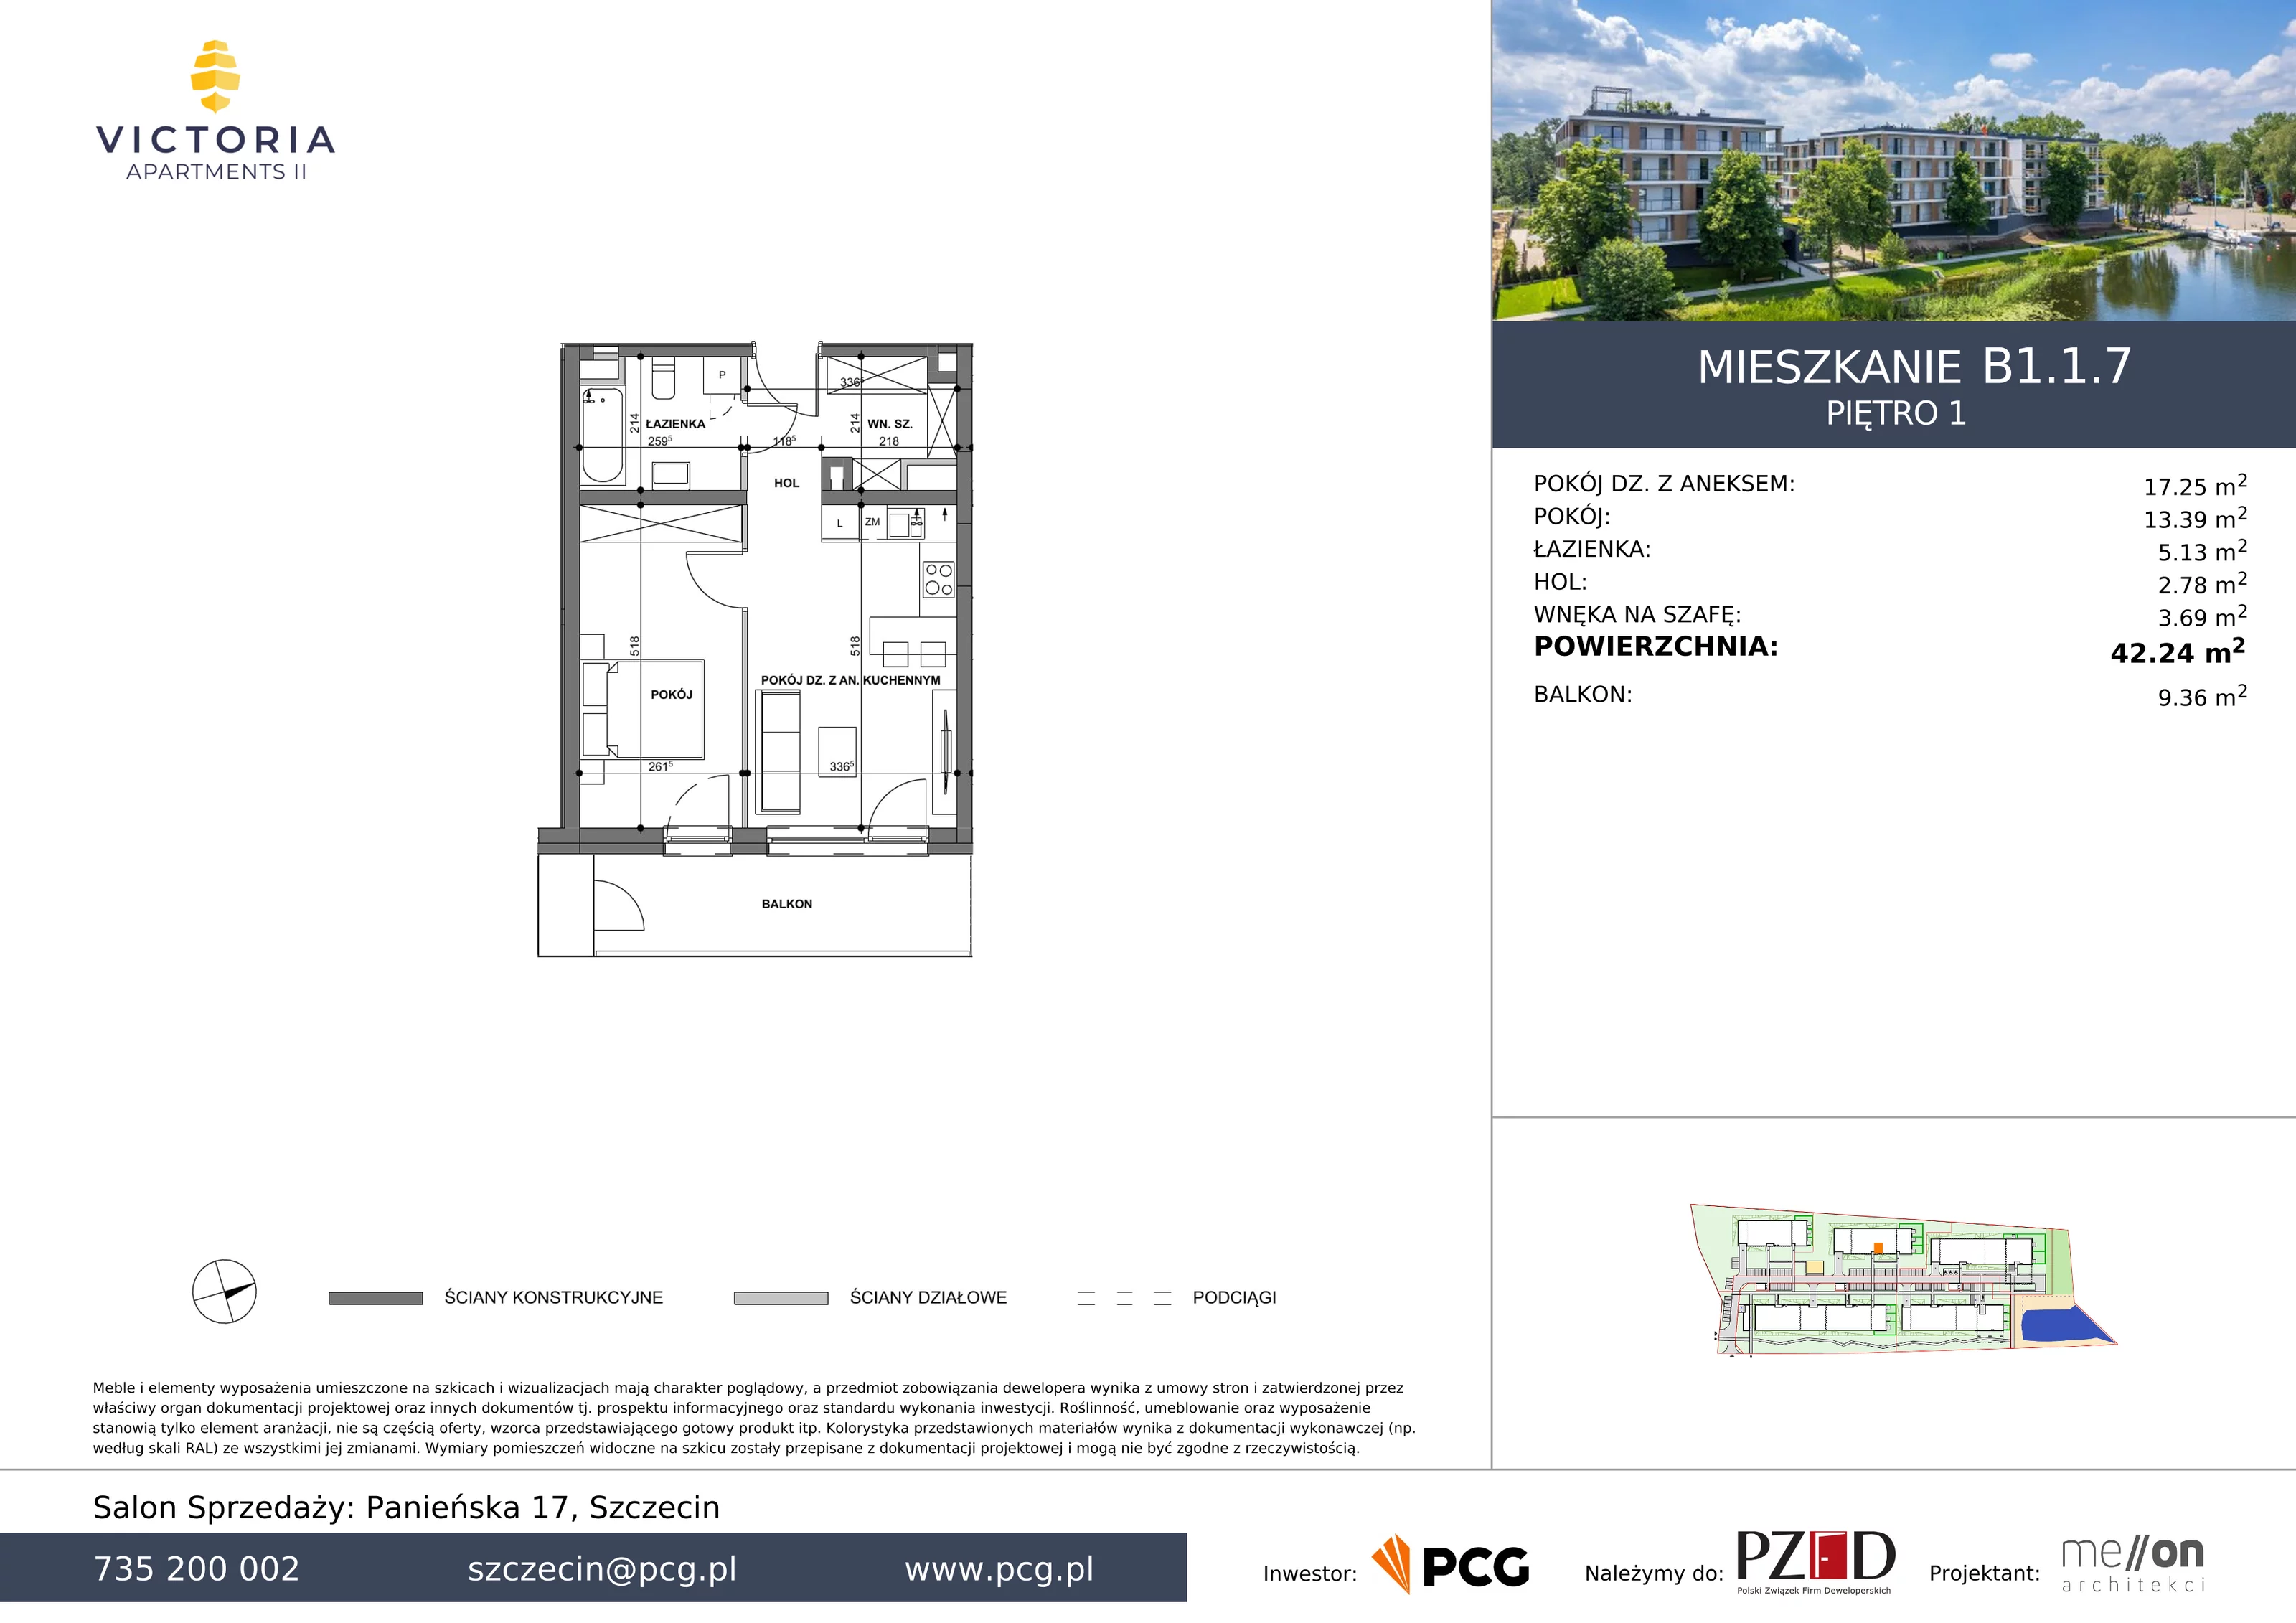 Apartament 42,24 m², piętro 1, oferta nr B1.1.7, Victoria Apartments II, Szczecin, Prawobrzeże, Dąbie, ul. Przestrzenna